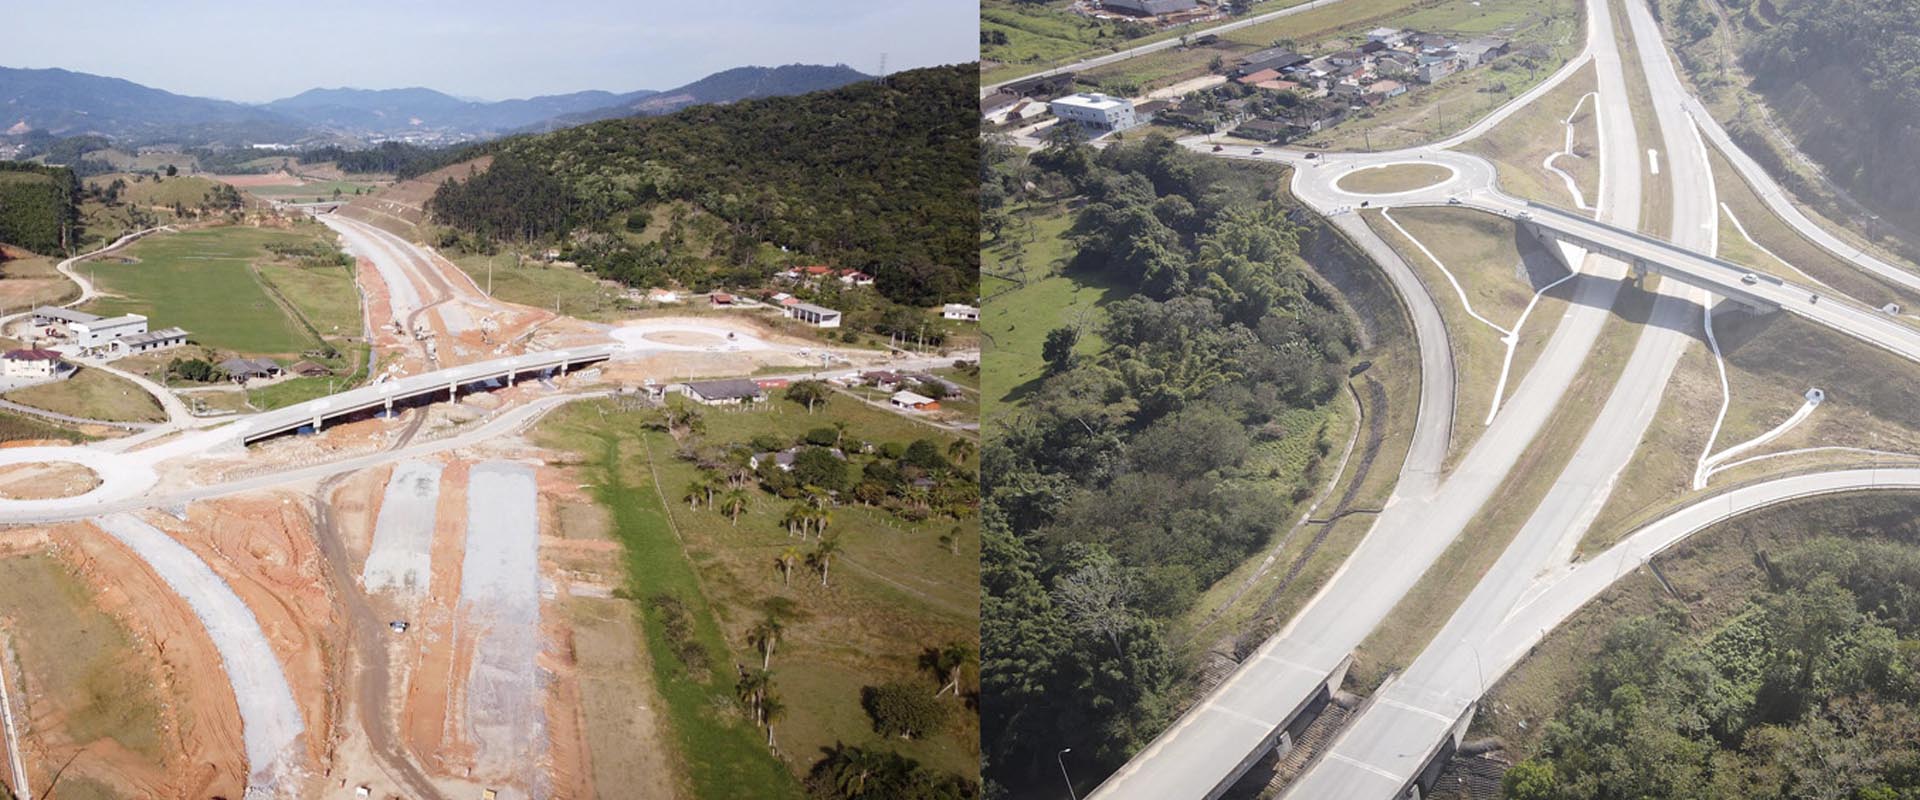 Imtraff supervisiona a maior obra rodoviária em andamento no país – Contorno de Florianópolis